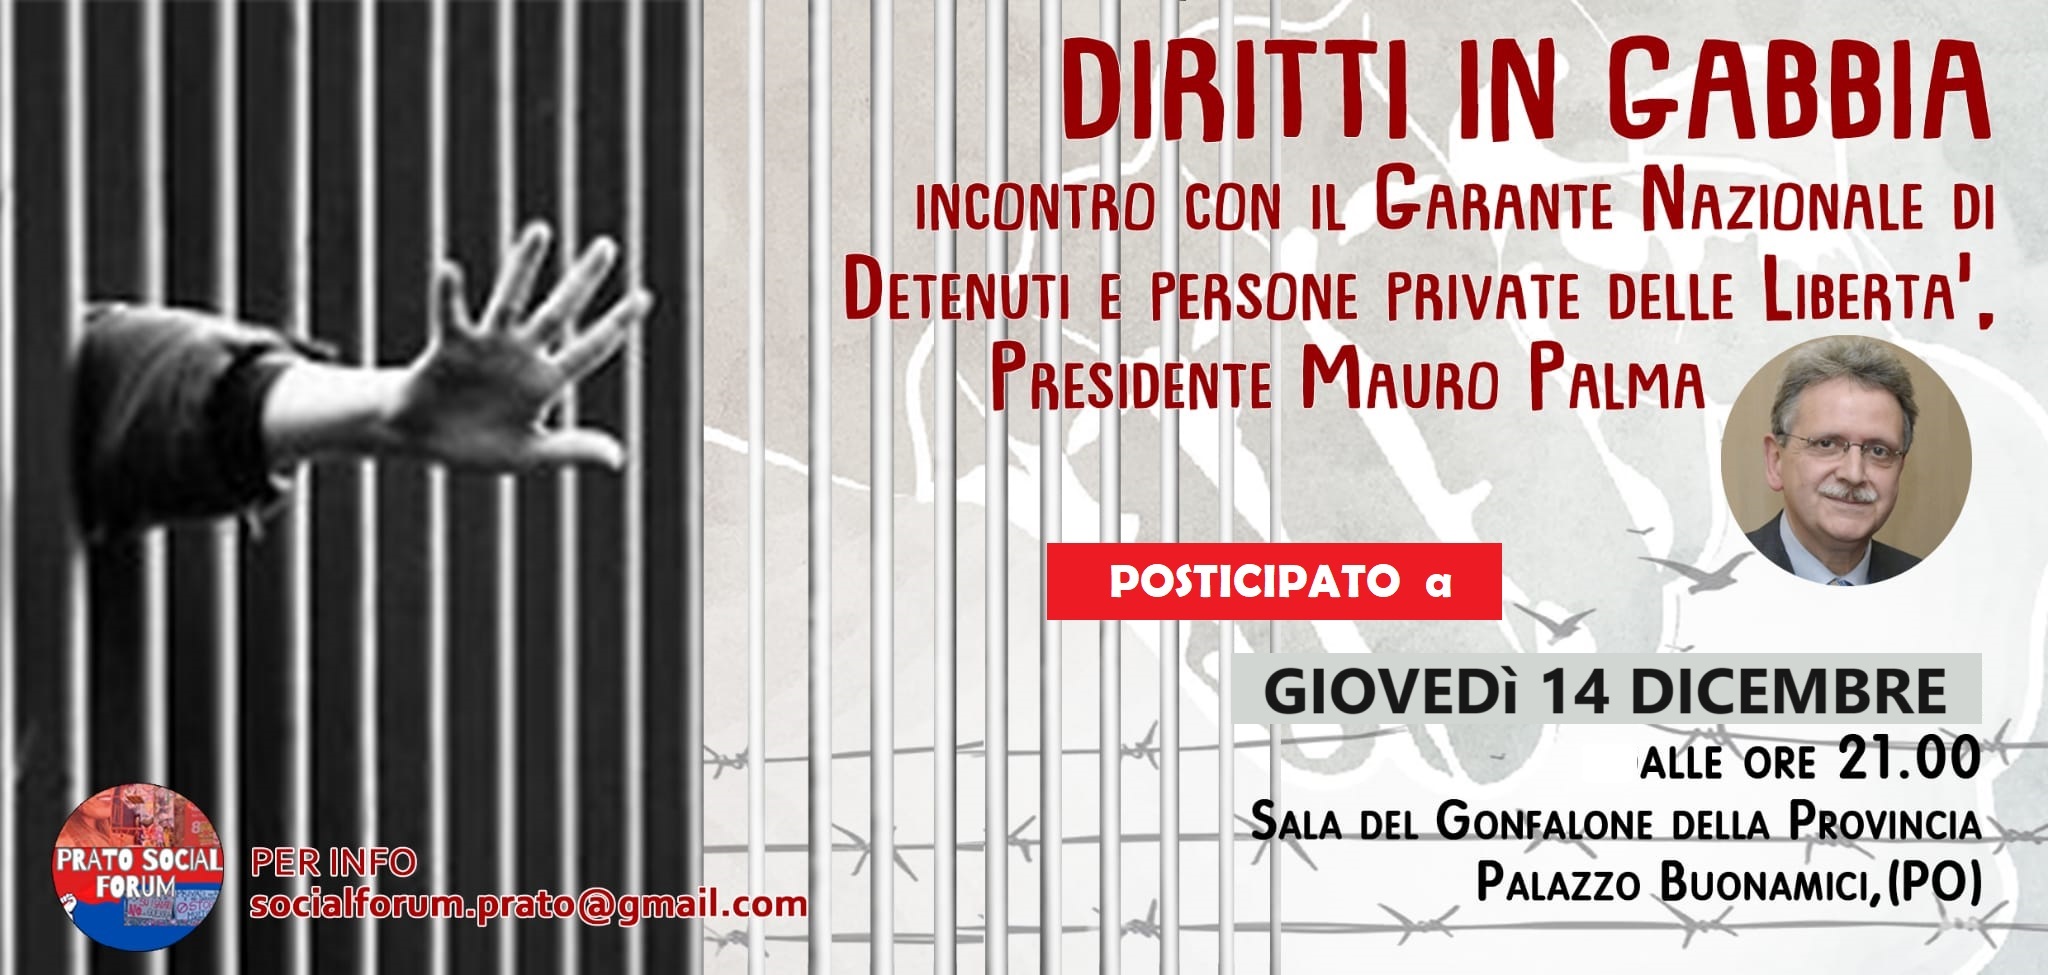 ‘DIRITTI IN GABBIA’ giovedì 14 dicembre incontro del Social Forum di Prato con il Pres.Garante Nazionale dei Diritti, Mauro Palma